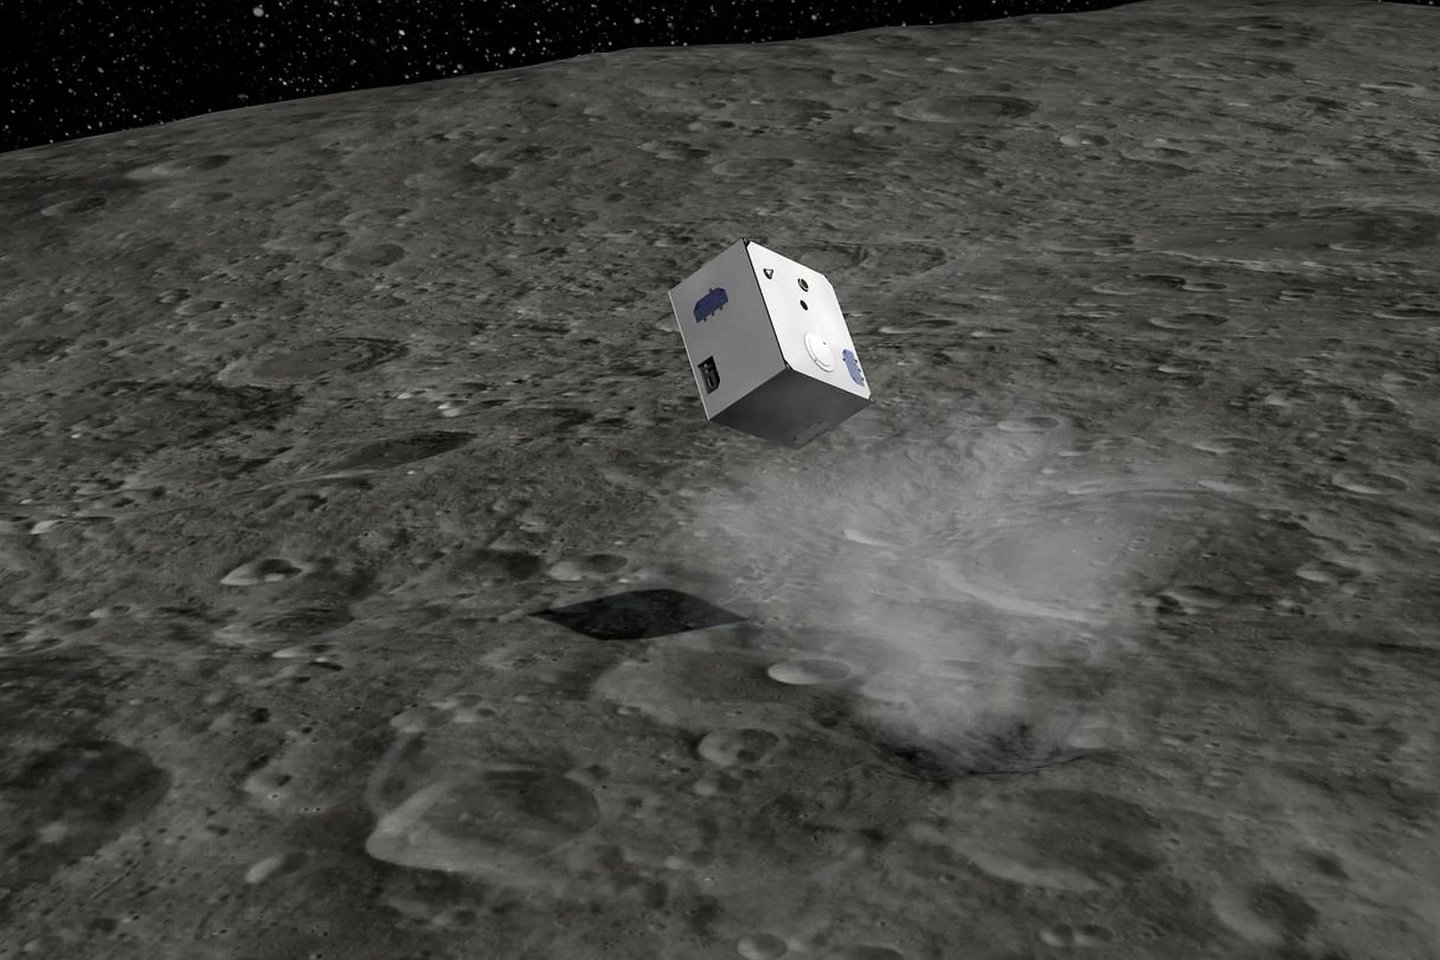  Batų dėžutės dydžio šuoliuojantis robotas, nusileidęs ant 900 metrų skersmens asteroido Ryugu antradienį, ketvirtadienį jau „išleido dvasią“.<br>Vokietijos Aeronautikos centro iliustr.